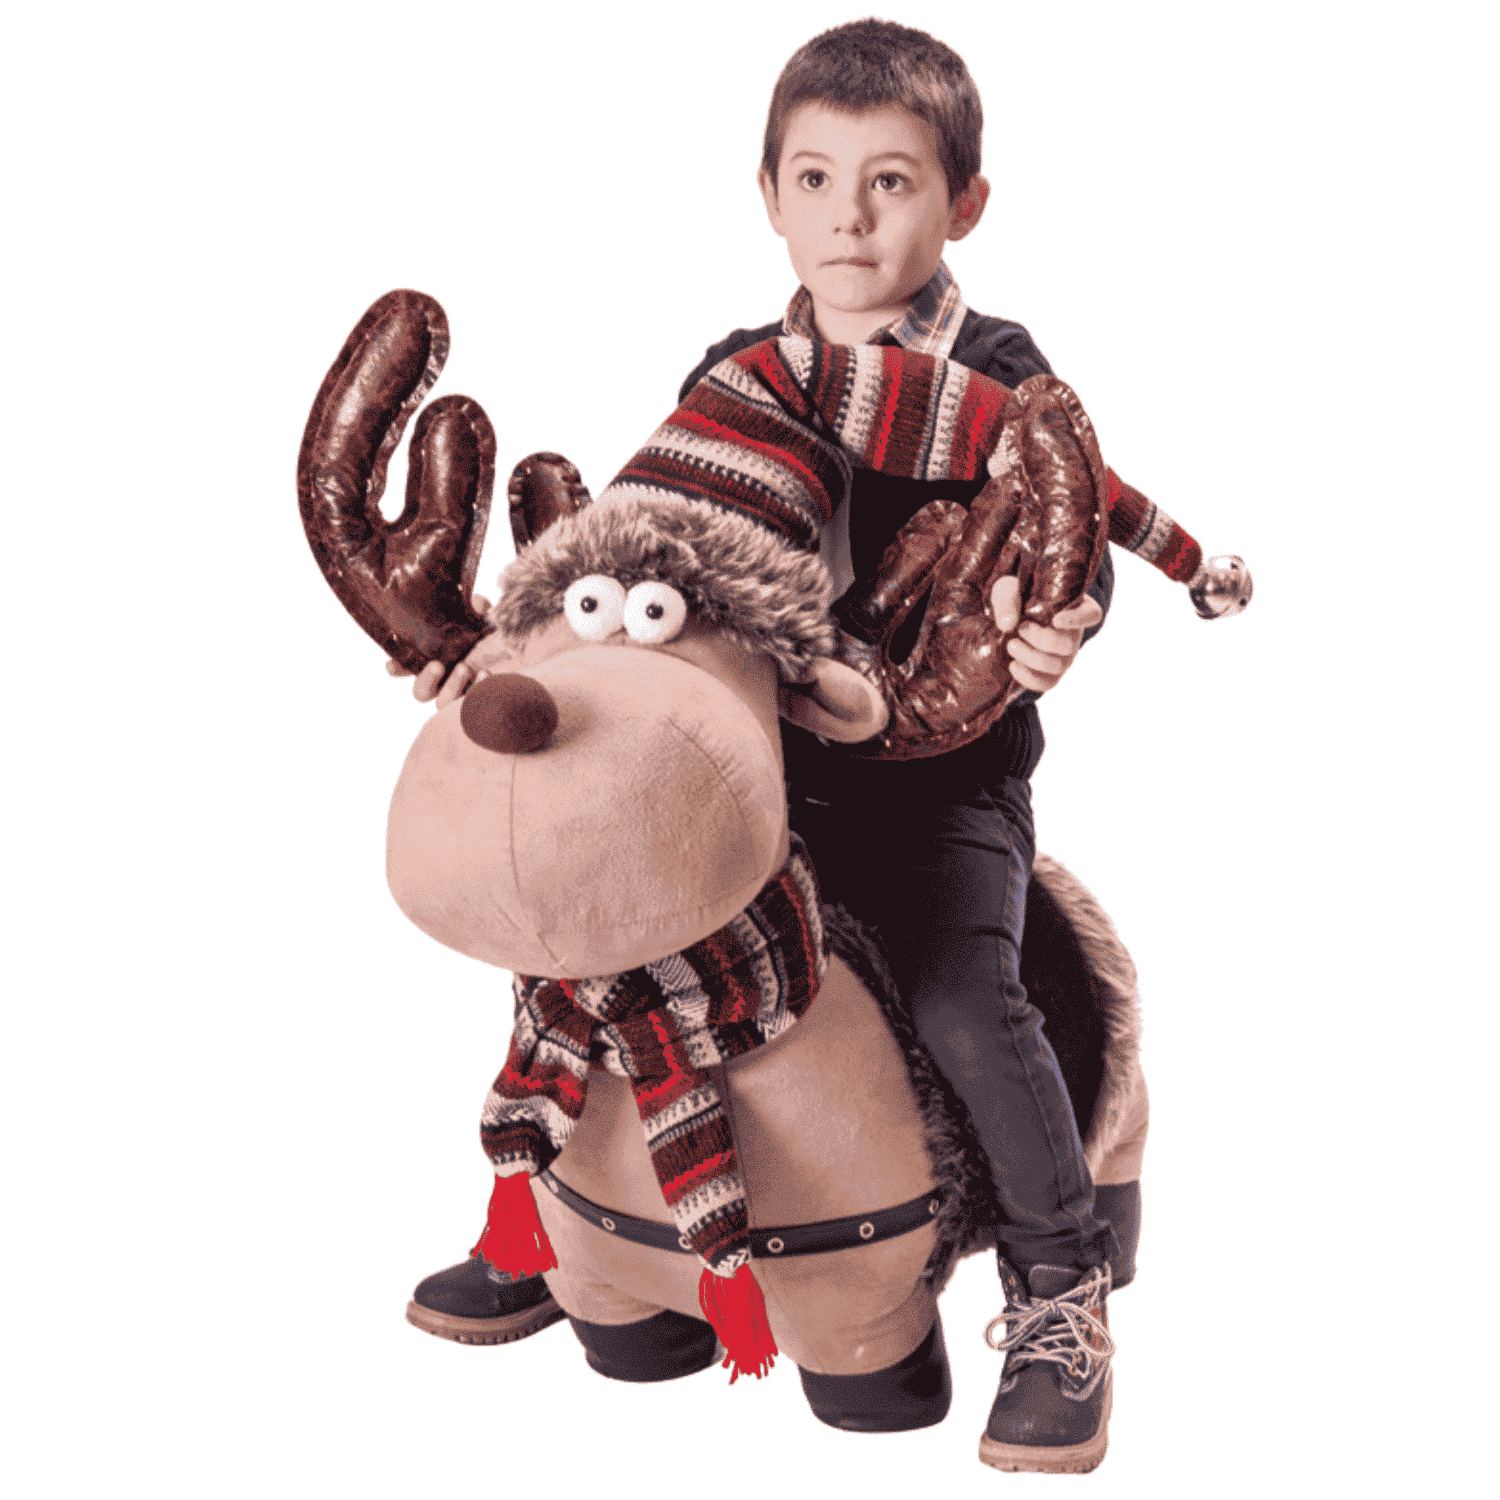 renna-rudolf-60-cm-cavalluccio-pupazzi-natale-giochi-decorazioni-natalizie